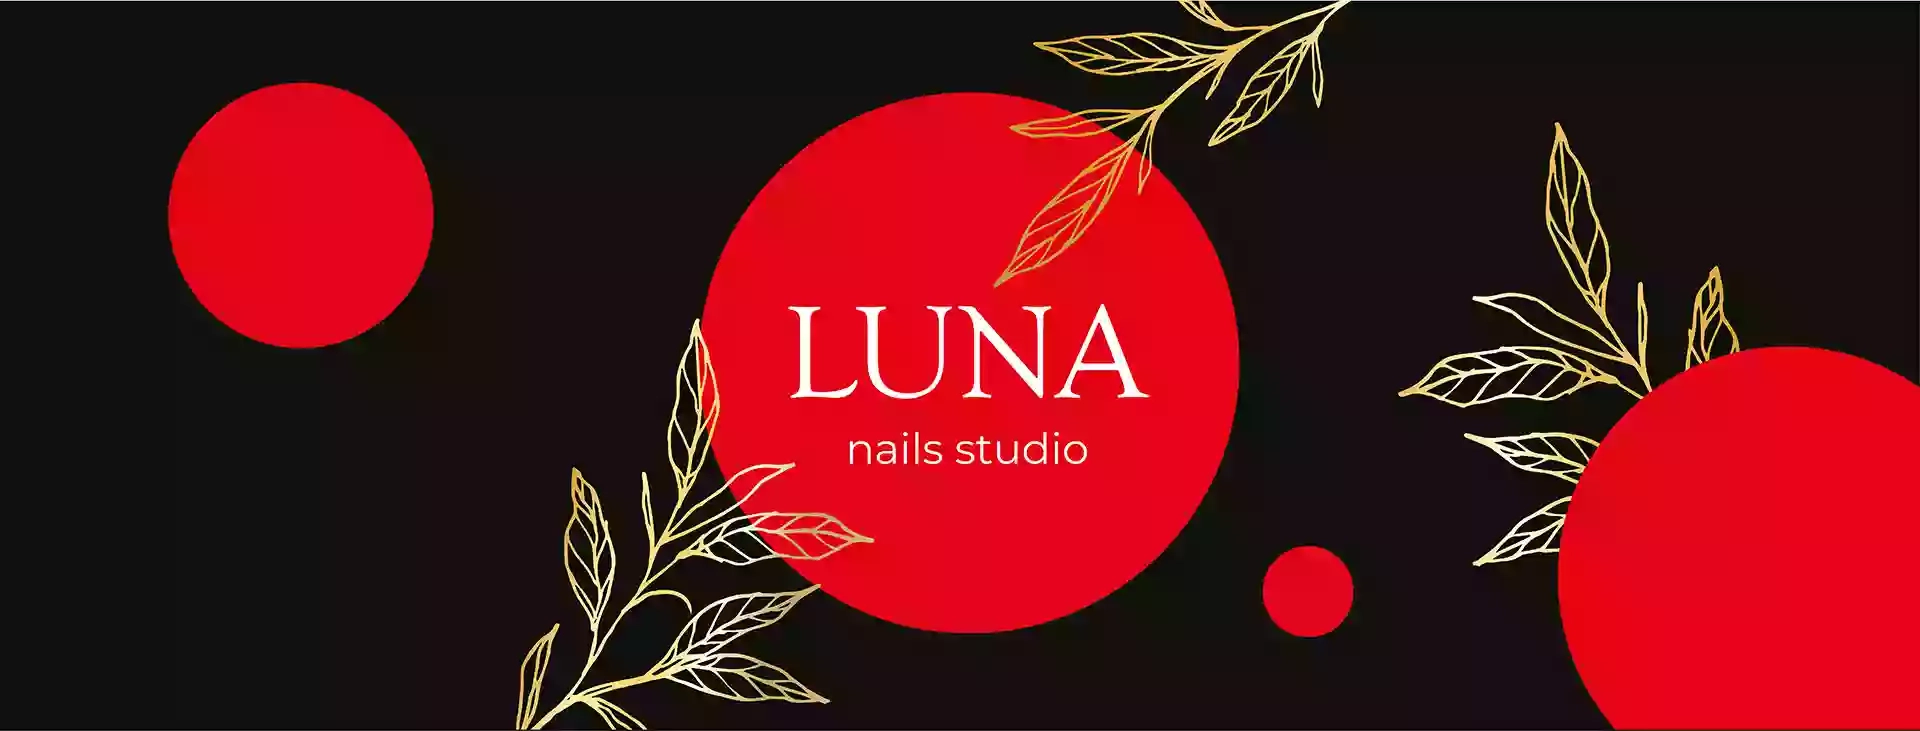 Luna nails studio